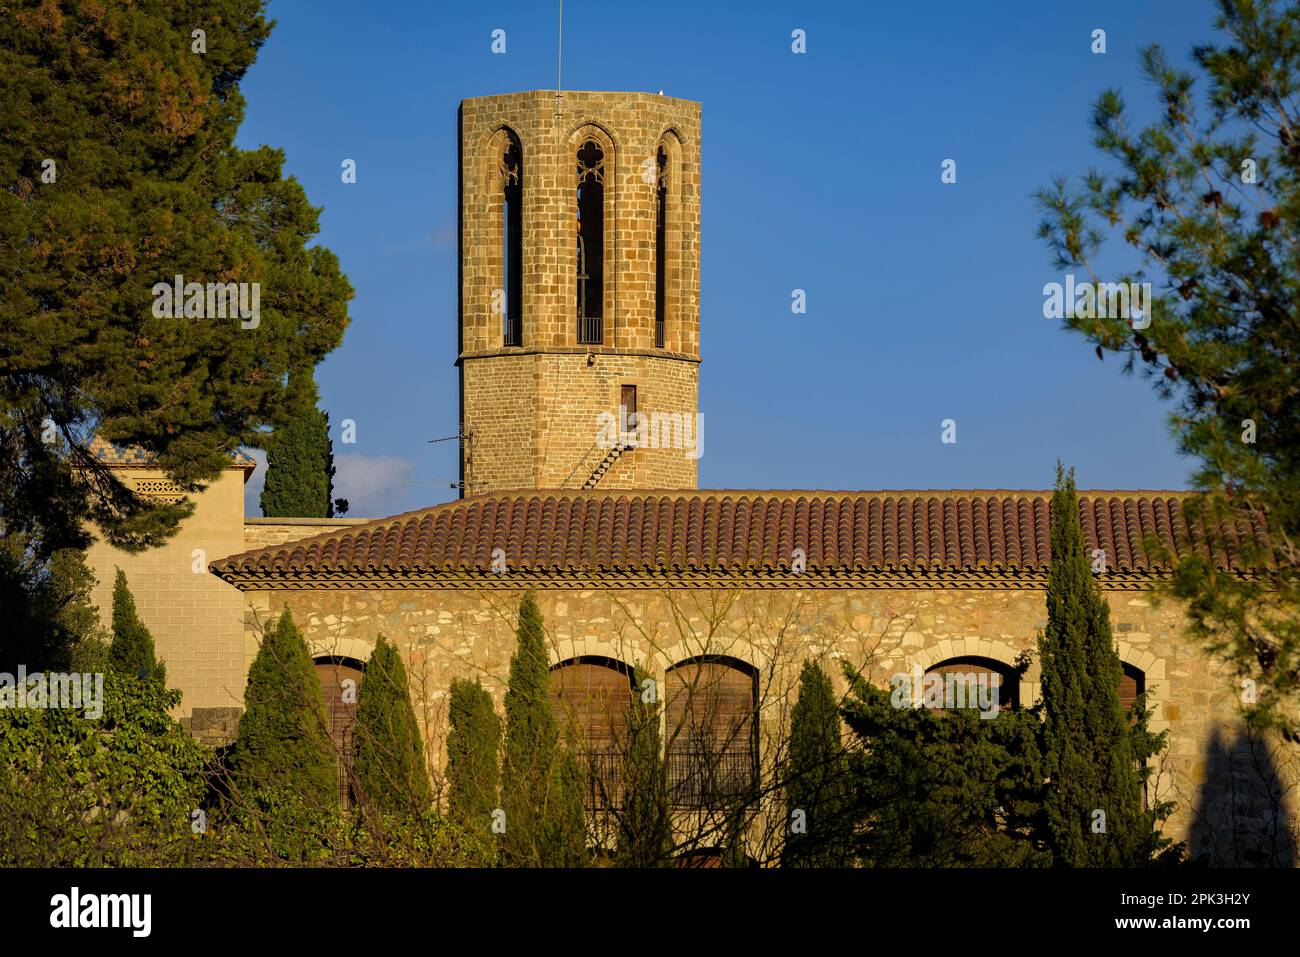 Campanile del Monastero reale di Pedralbes al tramonto (Barcellona, Catalogna, Spagna) ESP: Campanario del Real Monasterio de Pedralbes al atardecer Foto Stock